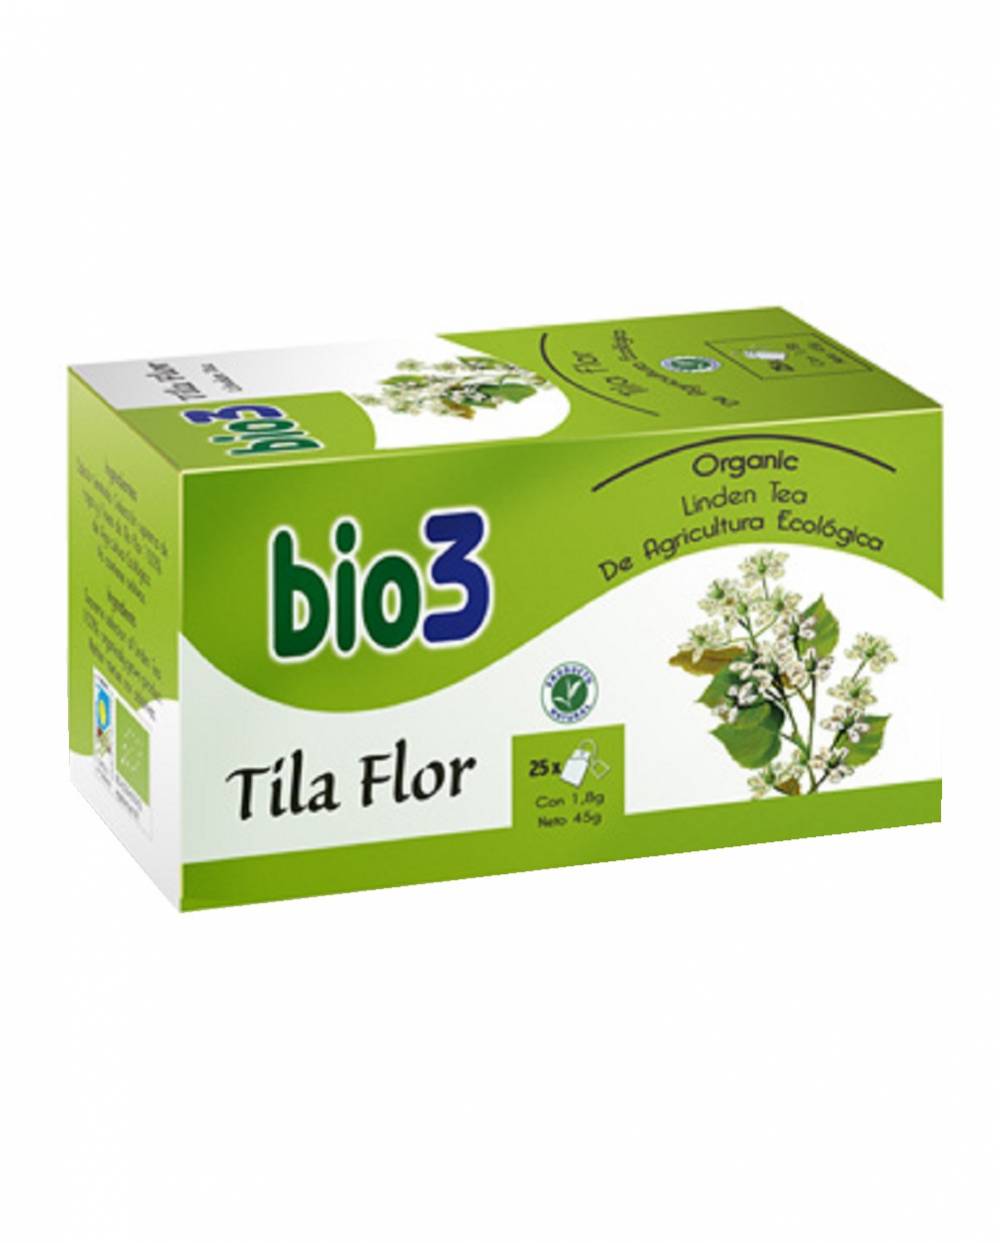 Bio3 Tila Flor Ecológica 25 bolsitas